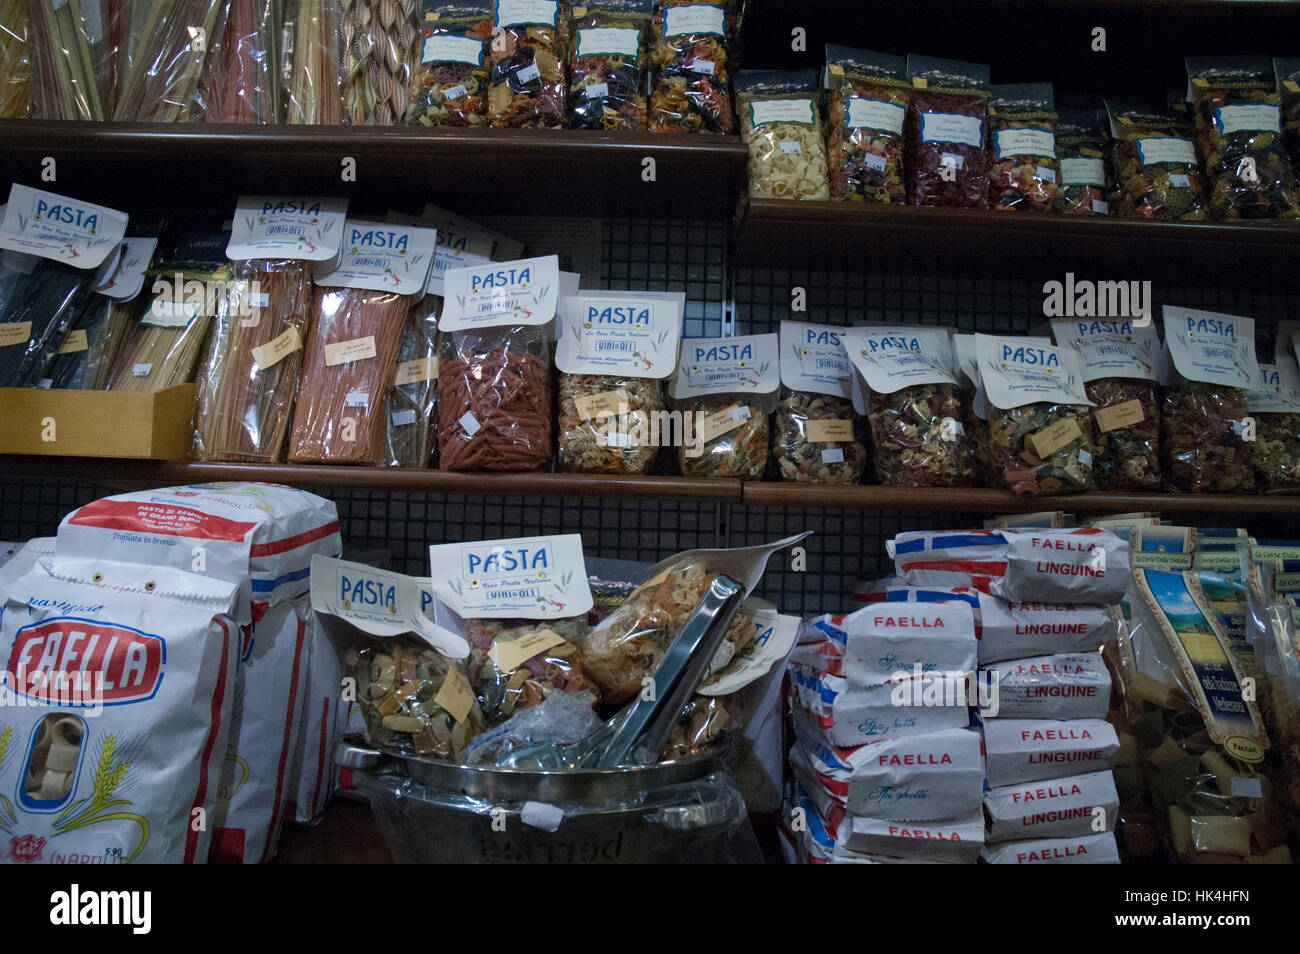 Les pâtes pour la vente dans un magasin d'alimentation, Rome, Italie Banque D'Images